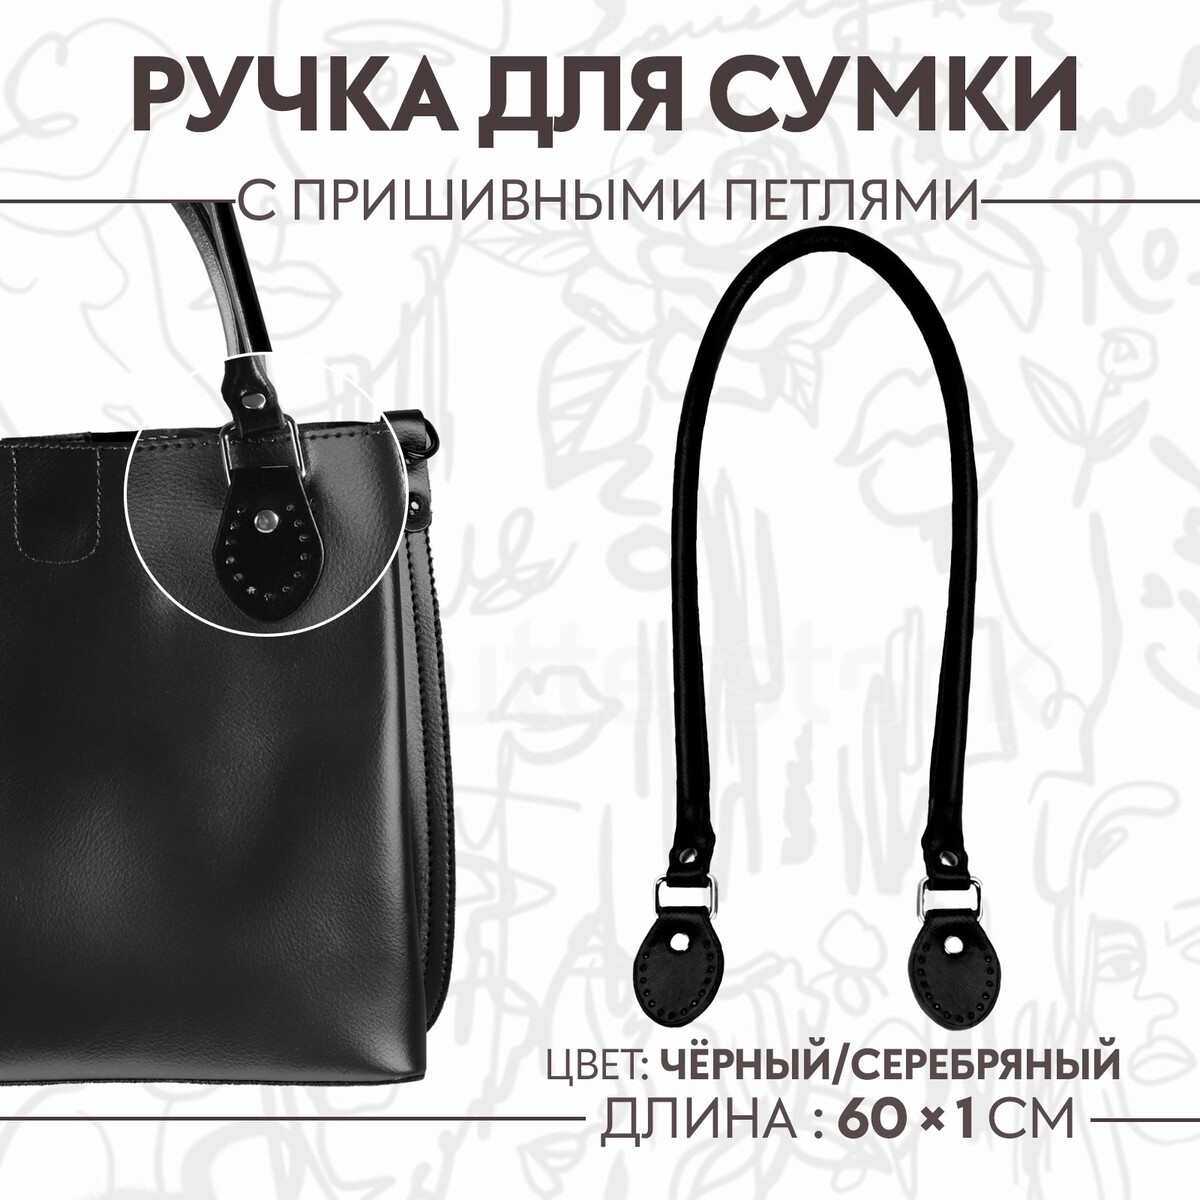 Ручка для сумки, 60 × 1 см, с пришивными петлями 3,5 см, цвет черный/серебряный